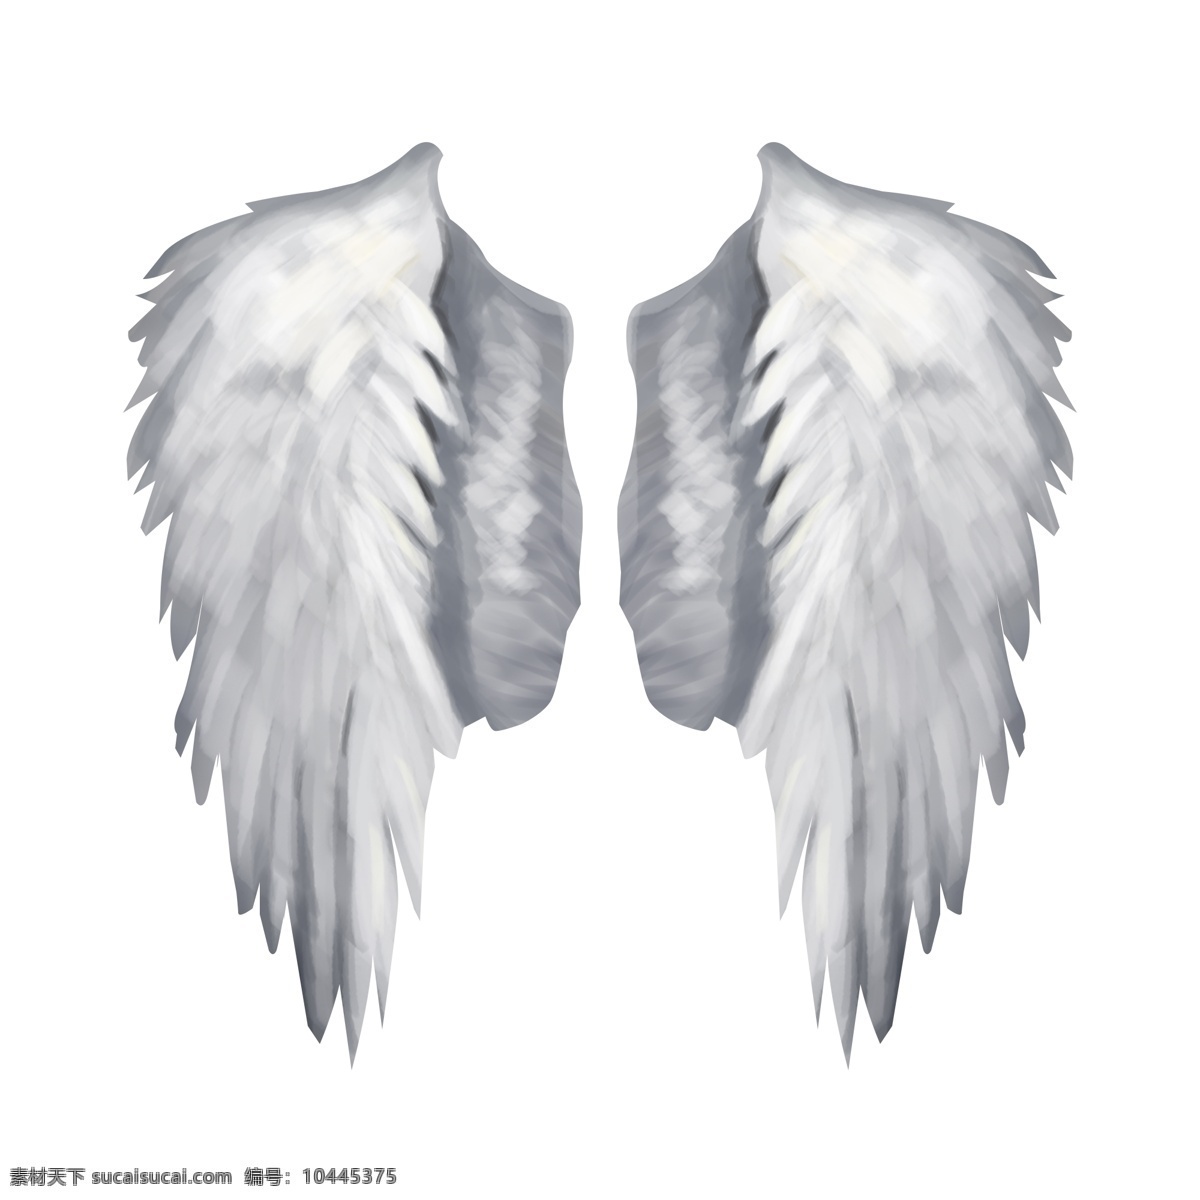 写实 天使 翅膀 元素 天使的翅膀 扇动 柔软 洁白 炫酷 白色 羽毛 羽翼 翱翔 飞翔 飞行